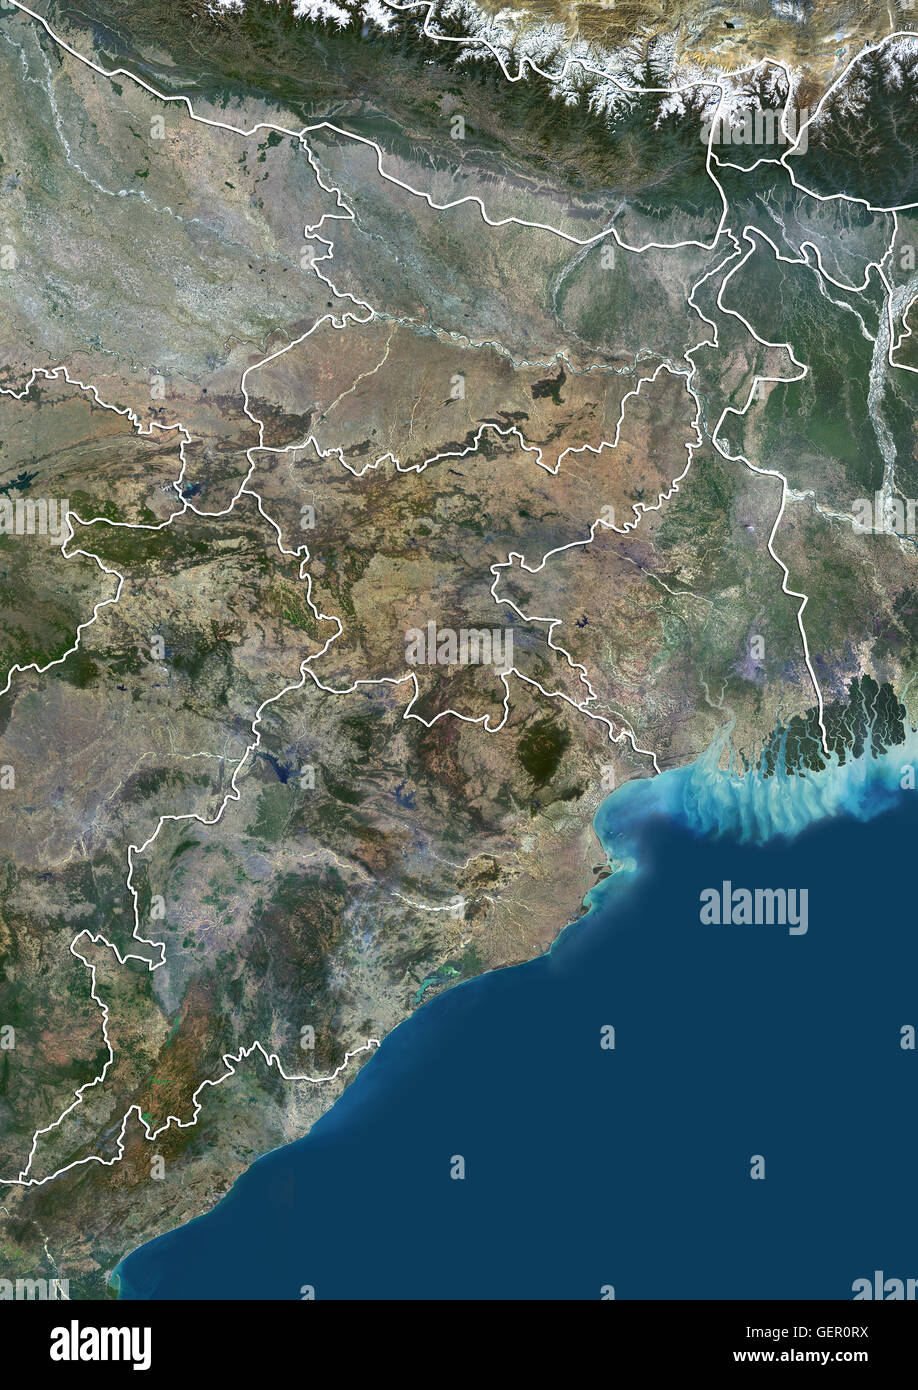 Vista satellitare di East India (con i confini dello stato). Esso copre il stati indiani del Bihar, nello stato del Jharkhand, Odisha e Bengala Occidentale. Questa immagine è stata elaborata sulla base dei dati acquisiti dal satellite Landsat 8 satellite in 2014. Foto Stock